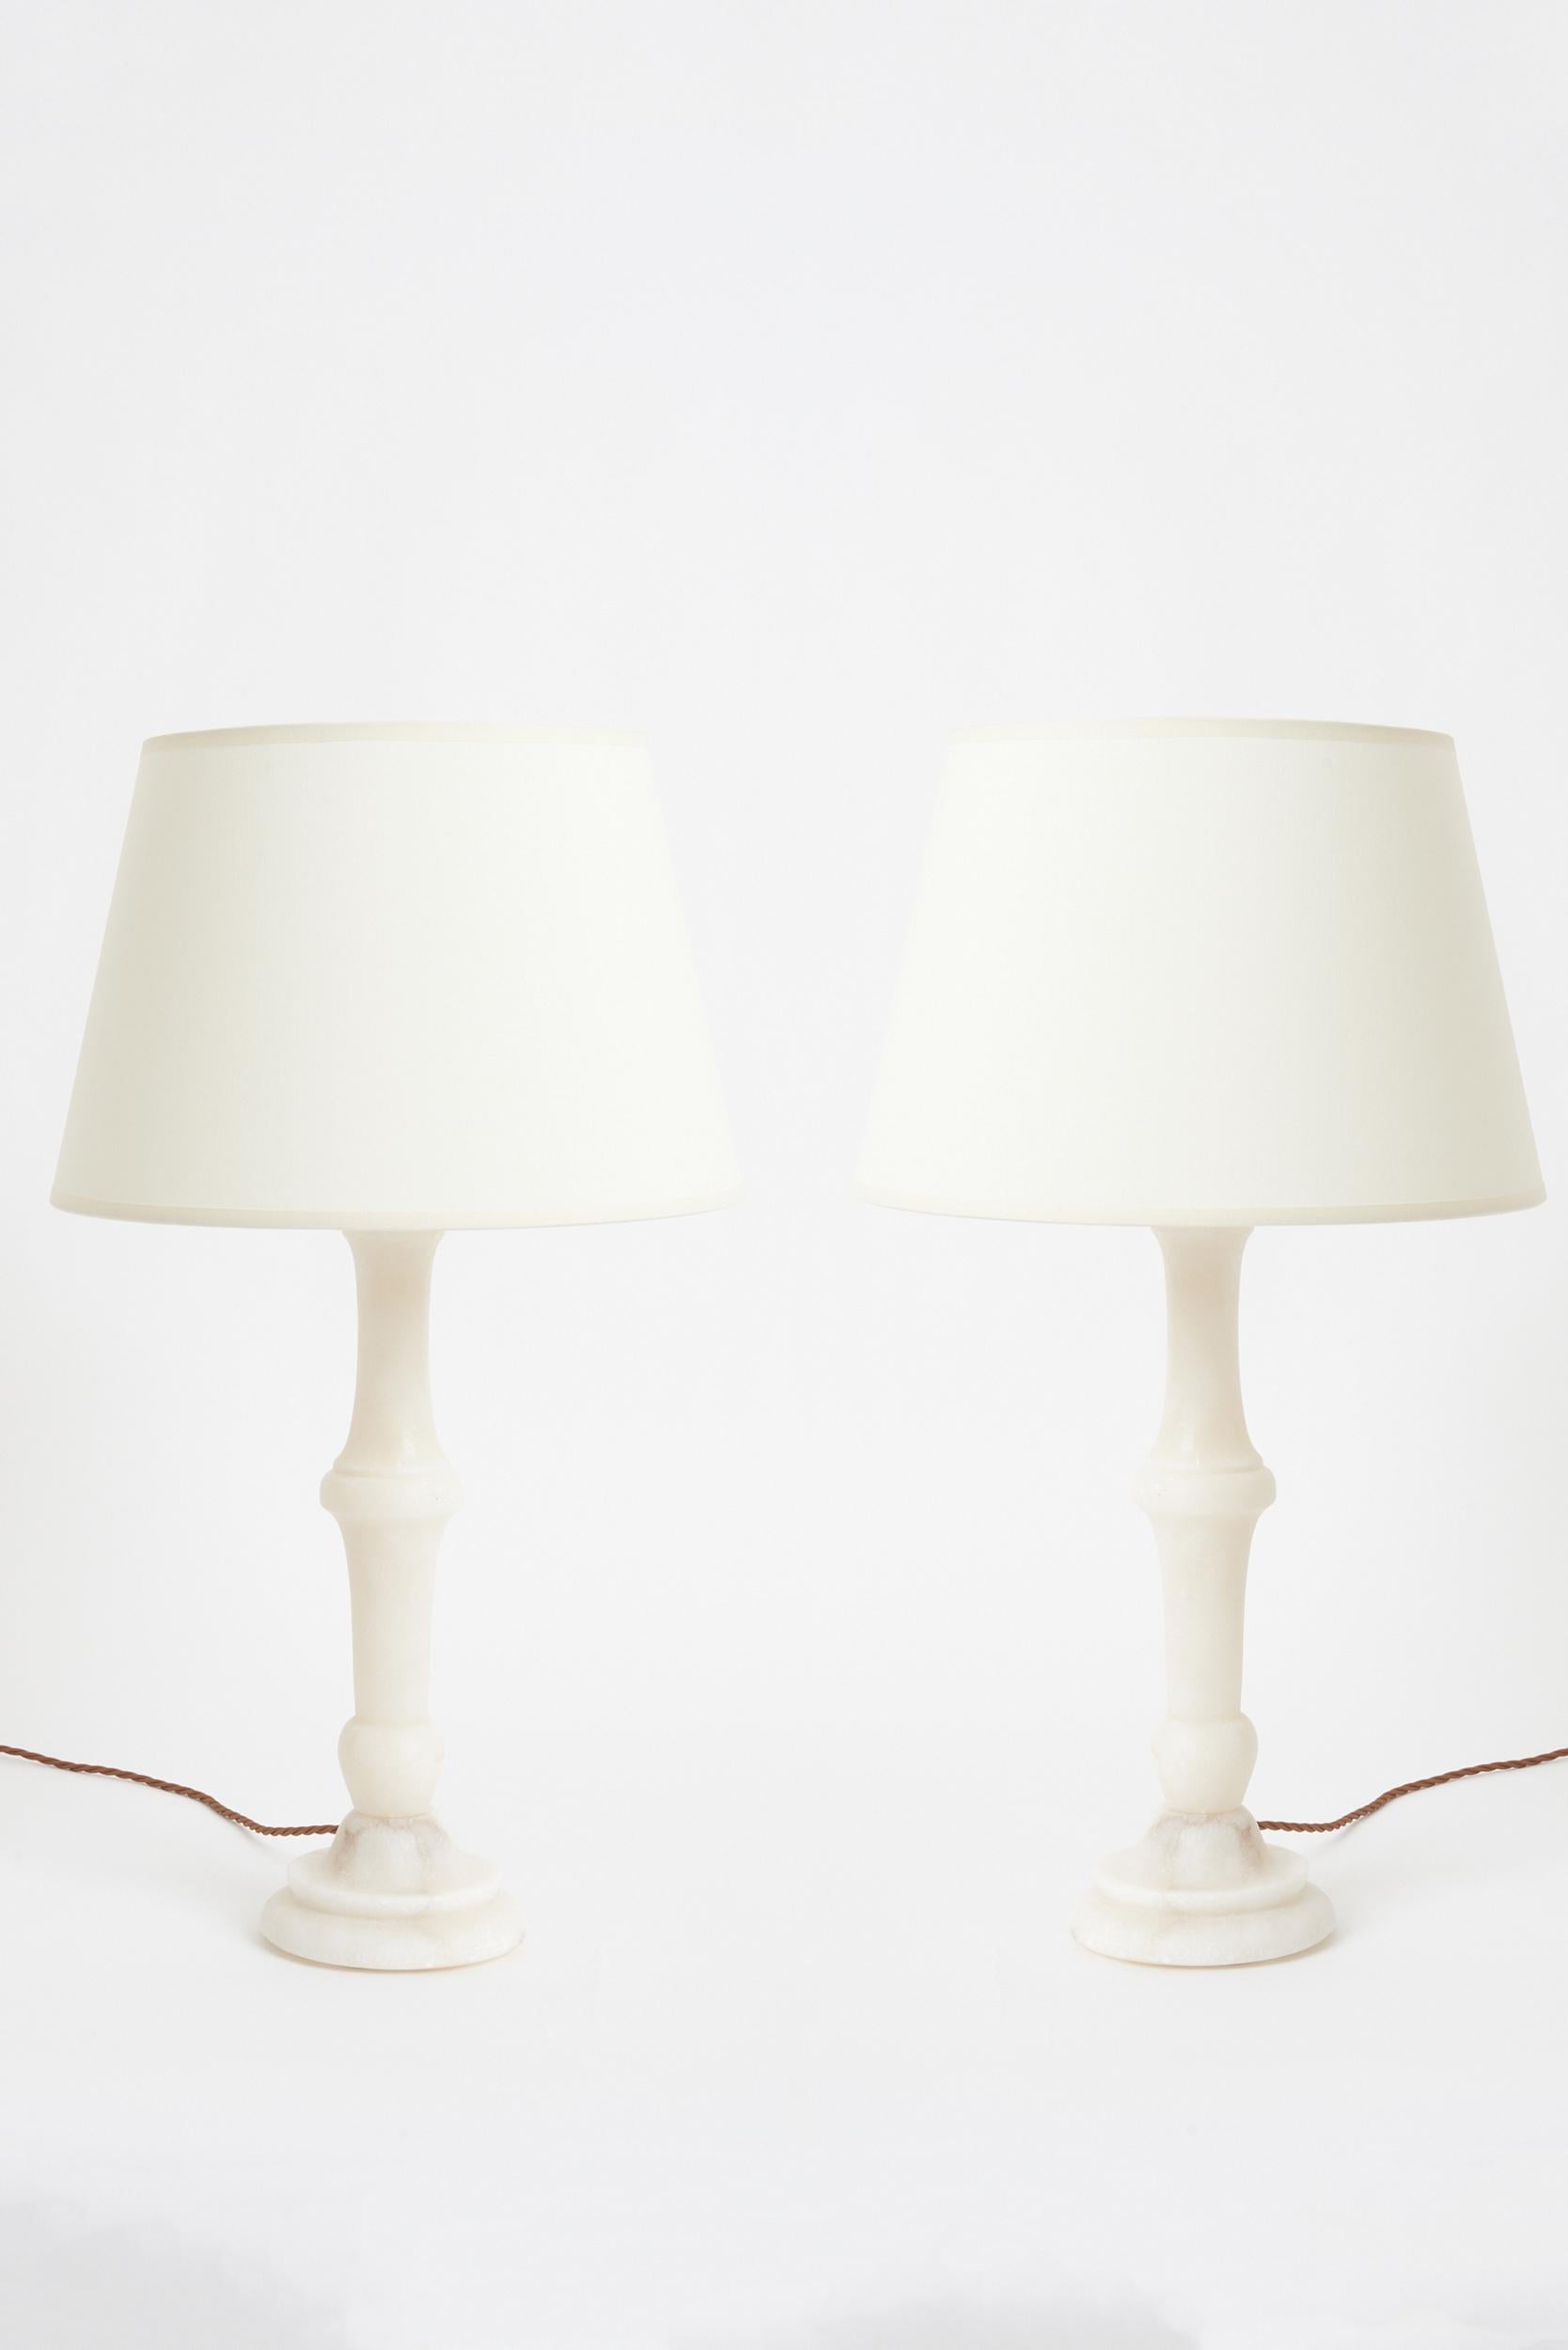 Paire de lampes de table en albâtre sculpté
Espagne, milieu du 20e siècle
Avec l'abat-jour : 64 cm de haut par 35,5 cm de diamètre
Base de la lampe uniquement : 46 cm de haut par 15 cm de diamètre